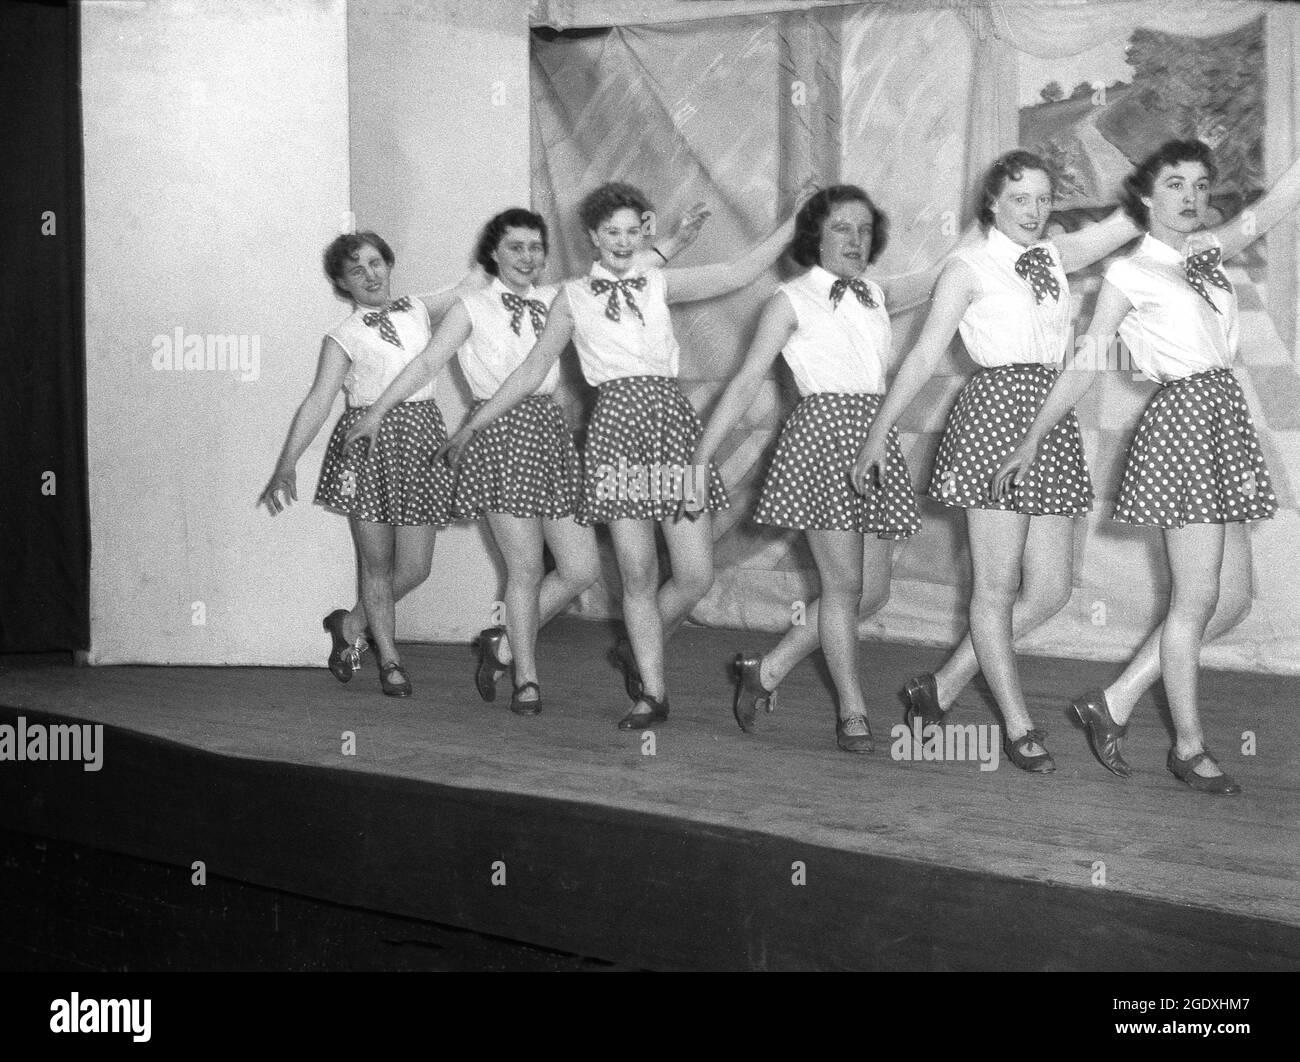 1957, historisch, eine Tanztruppe von Darstellerinnen in ihren Kostümen aus kurzen Röcken mit Punktmuster und ärmellosen Blusen auf der Bühne, die in der Pantomine Aladdin, einer populären Geschichte, die auf einer mittelöstlichen Volksgeschichte basiert, England, Großbritannien, auftaucht. Stockfoto